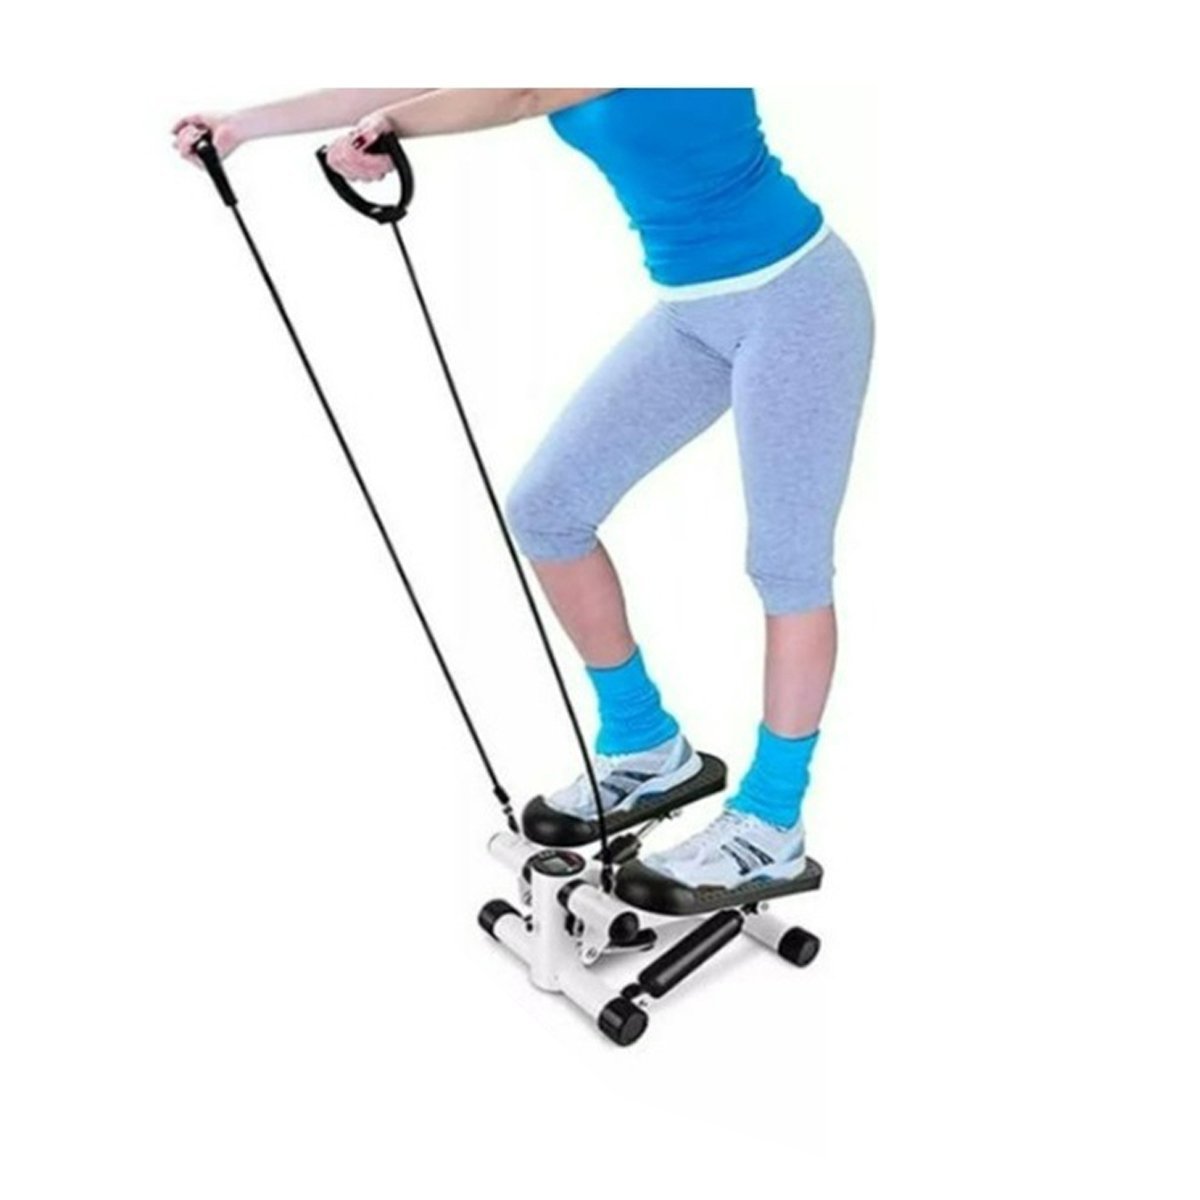 Mini Stepper Simulador Caminhada Fisioterapia Exercicio Perna Gluteo Braço Academia Atividade Fisica - 2